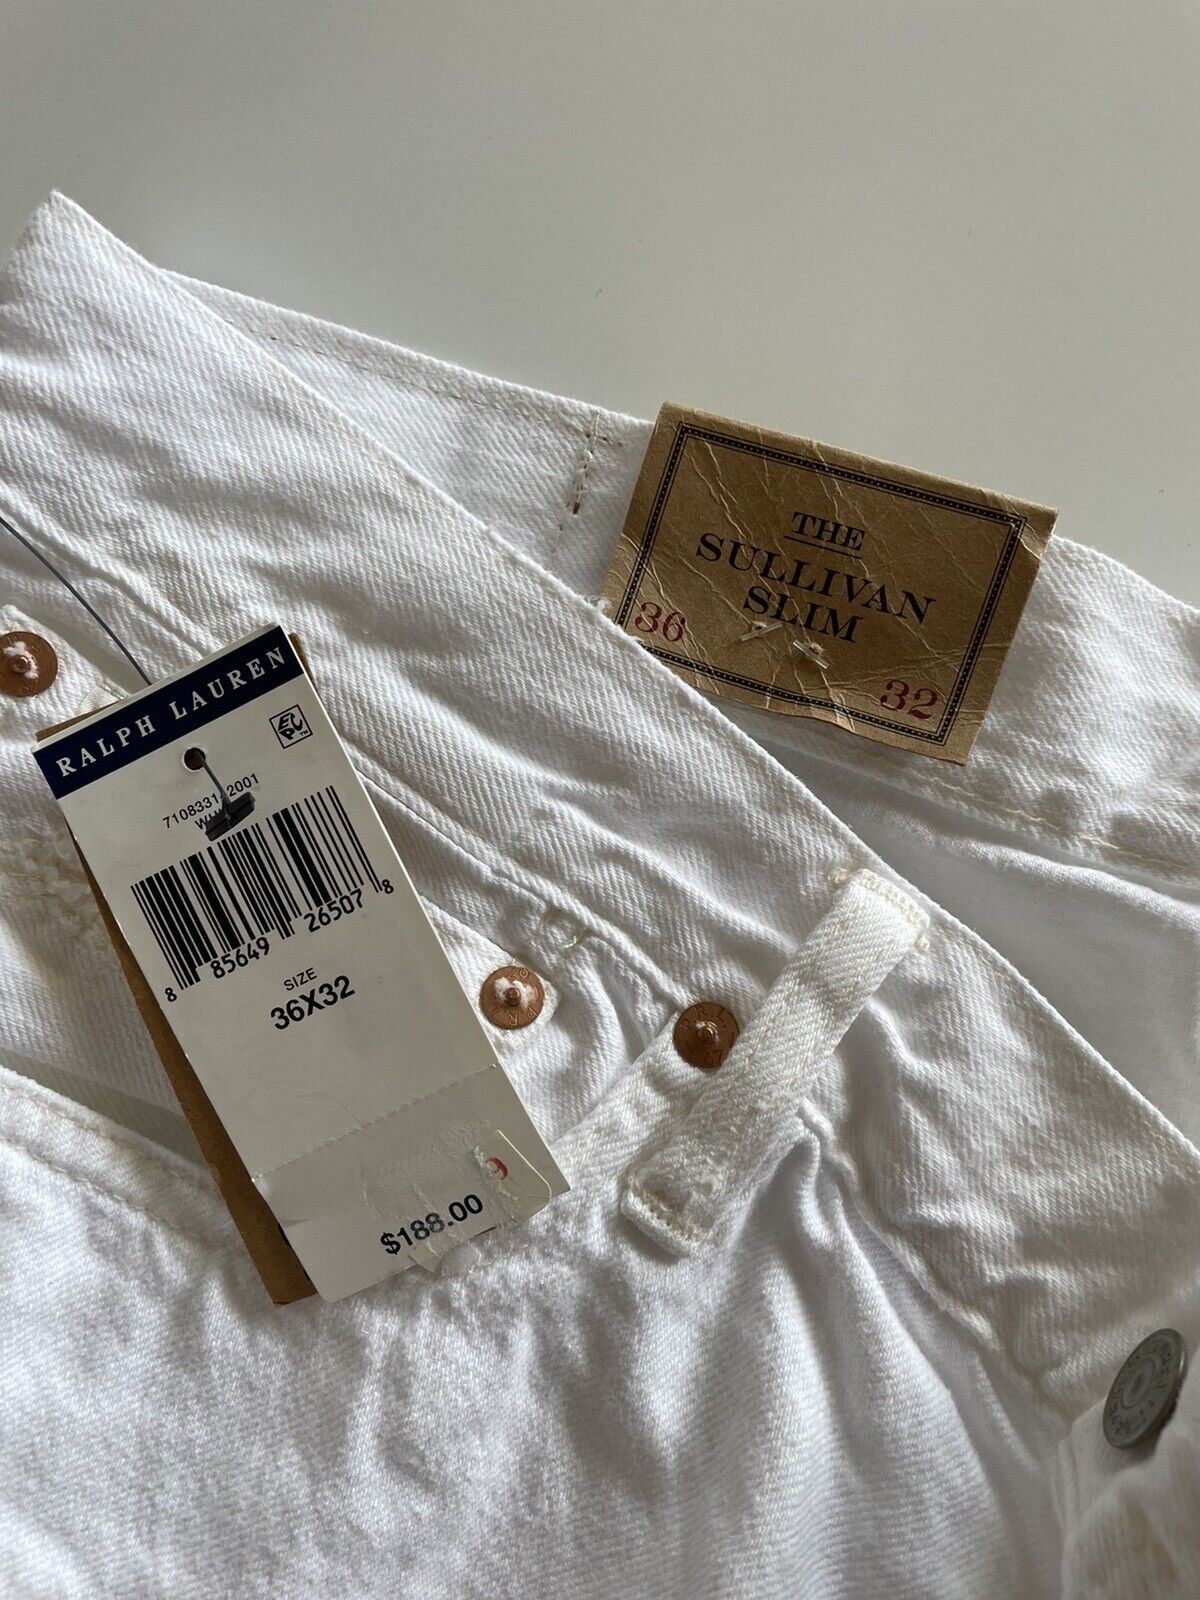 Мужские узкие белые джинсы Polo Ralph Lauren The Sullivan стоимостью 188 долларов США, размер 36x32 (38 дюймов)